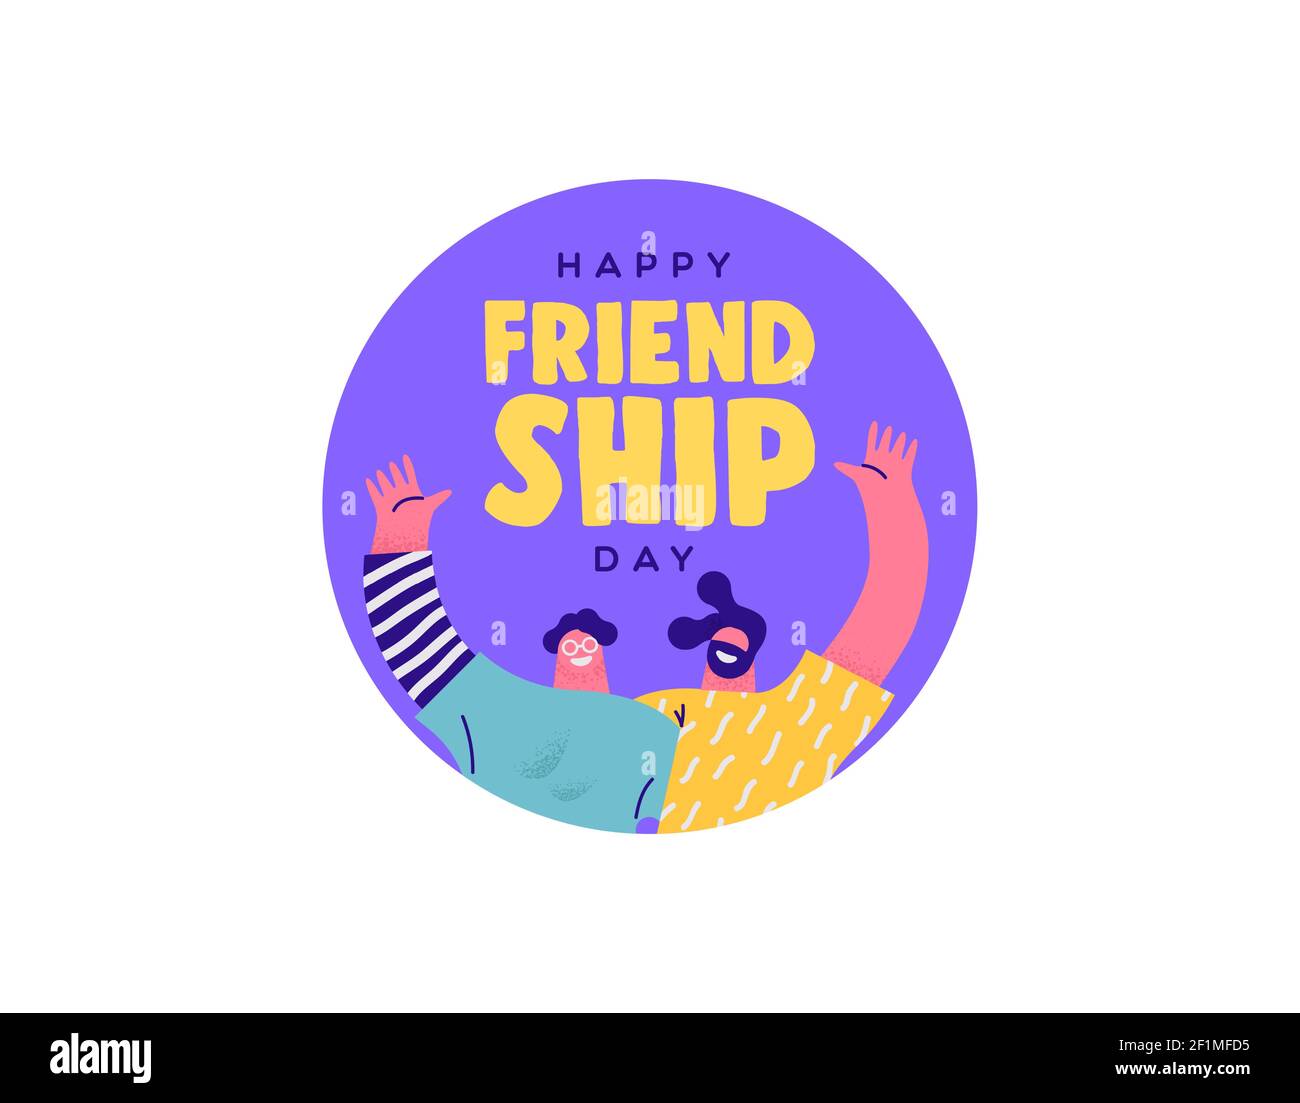 Happy Friendship Tag Grußkarte Illustration von zwei Männern Freunde umarmt zusammen und lächelt für beste Freund Beziehung Feier. Stock Vektor